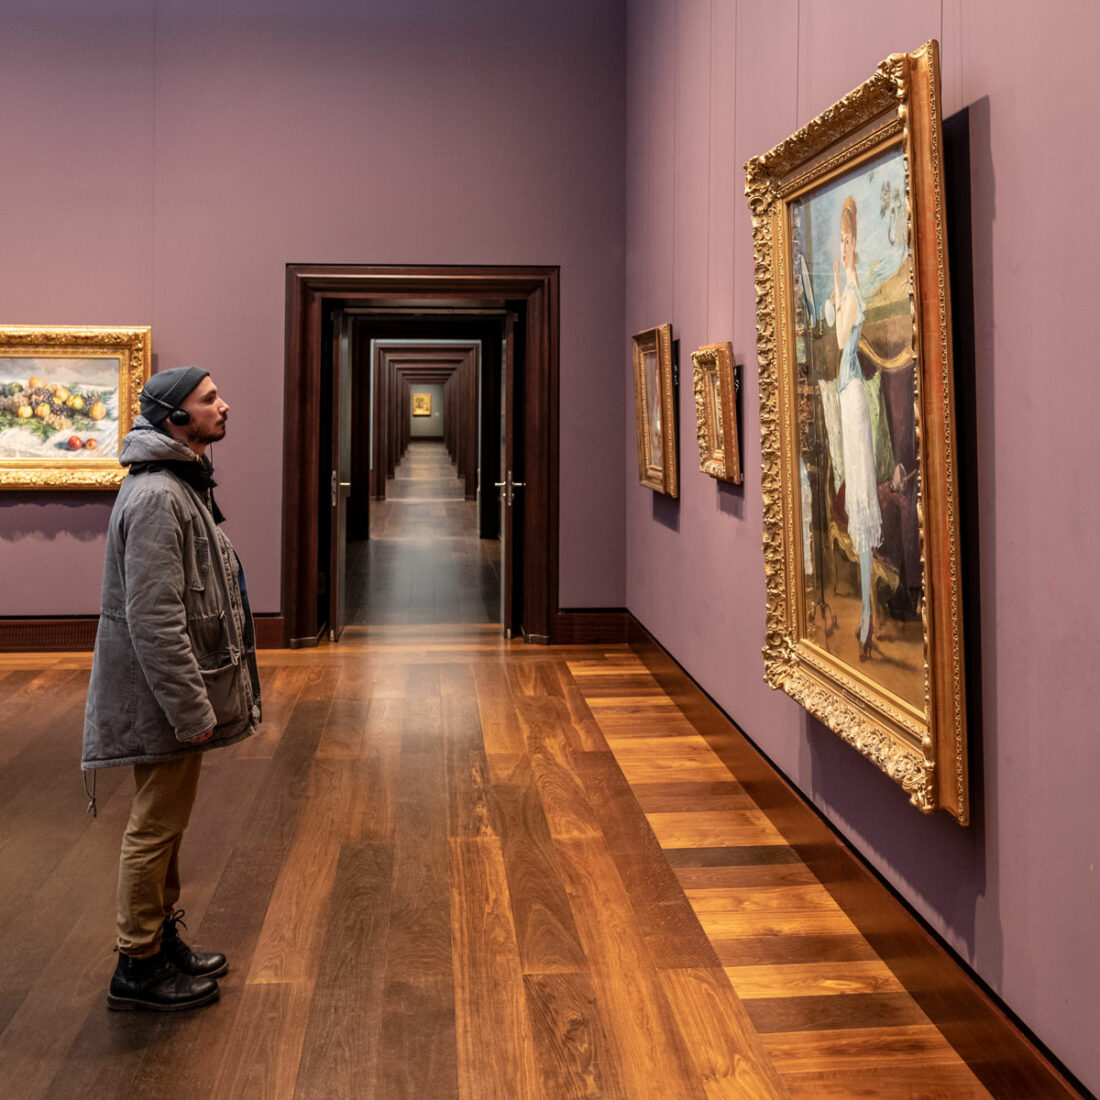 Ein Besucher der Kunsthalle steht fasziniert vor einem ausgestellten Gemälde und verfällt in Träume.